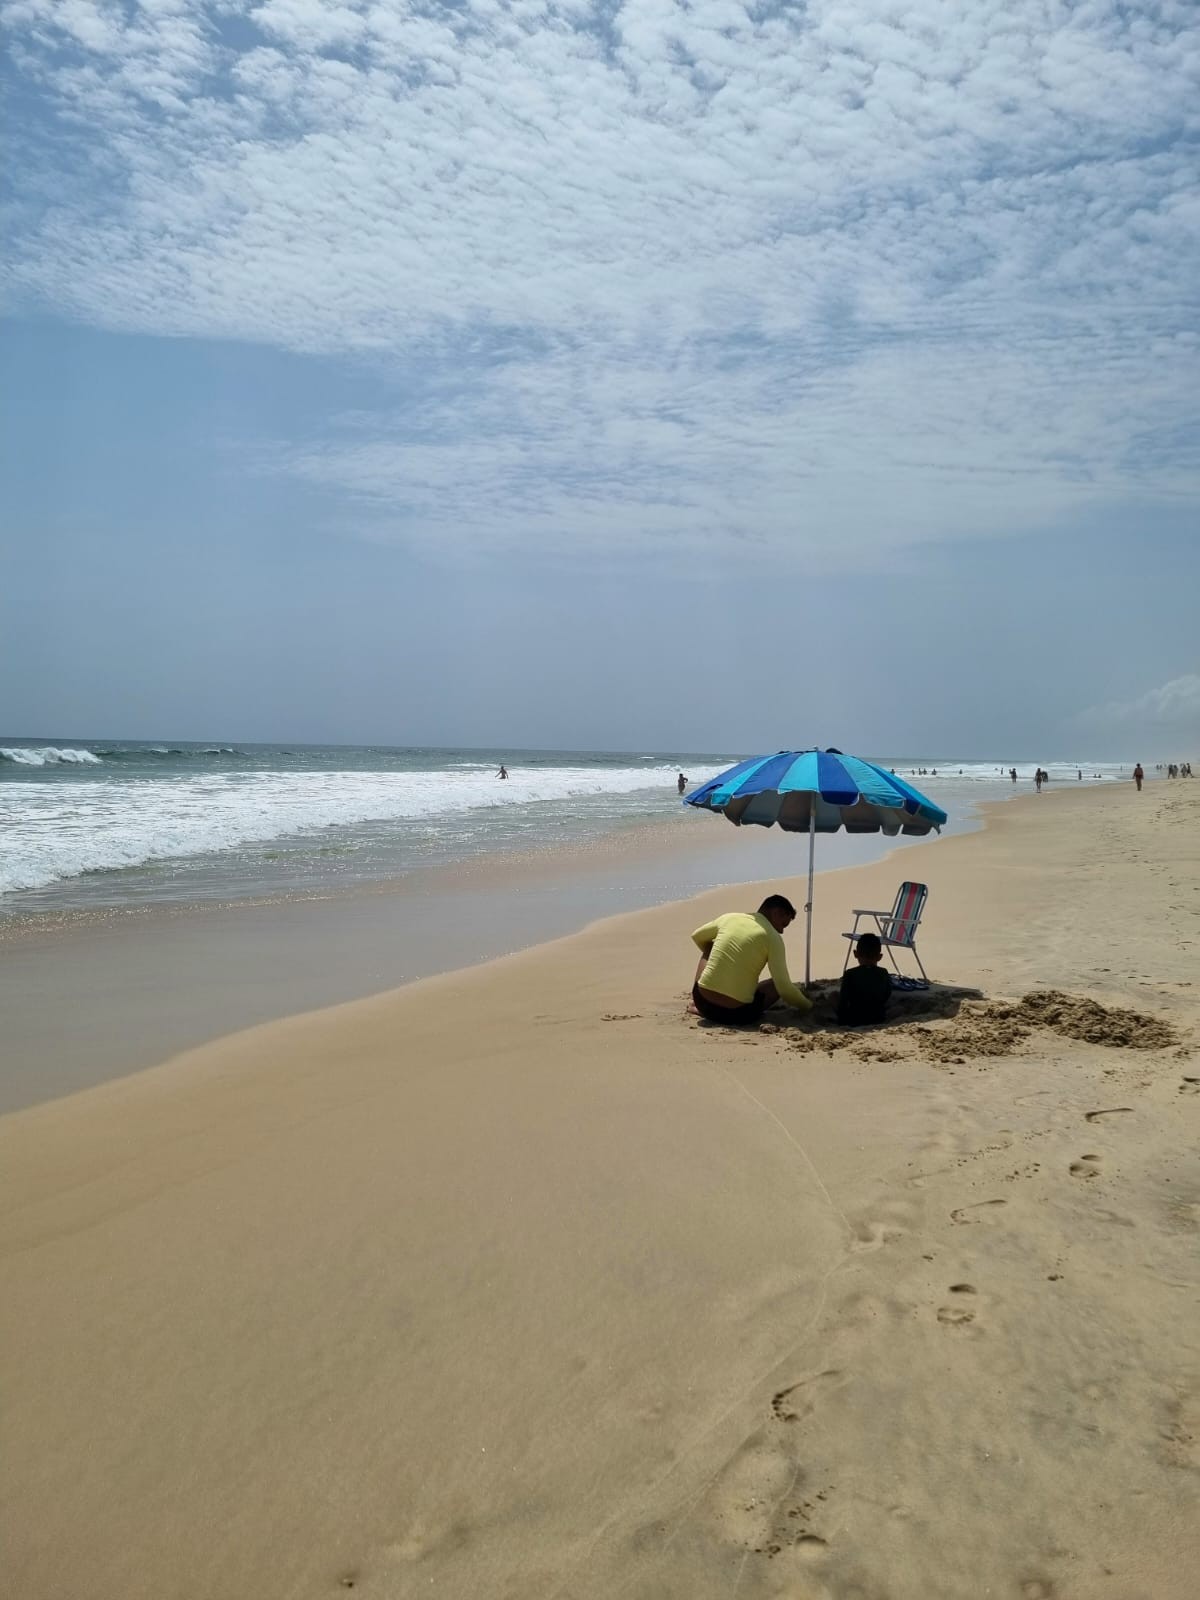 Fortaleza tem 21 trechos de praia próprios para banho neste fim de semana; confira quais